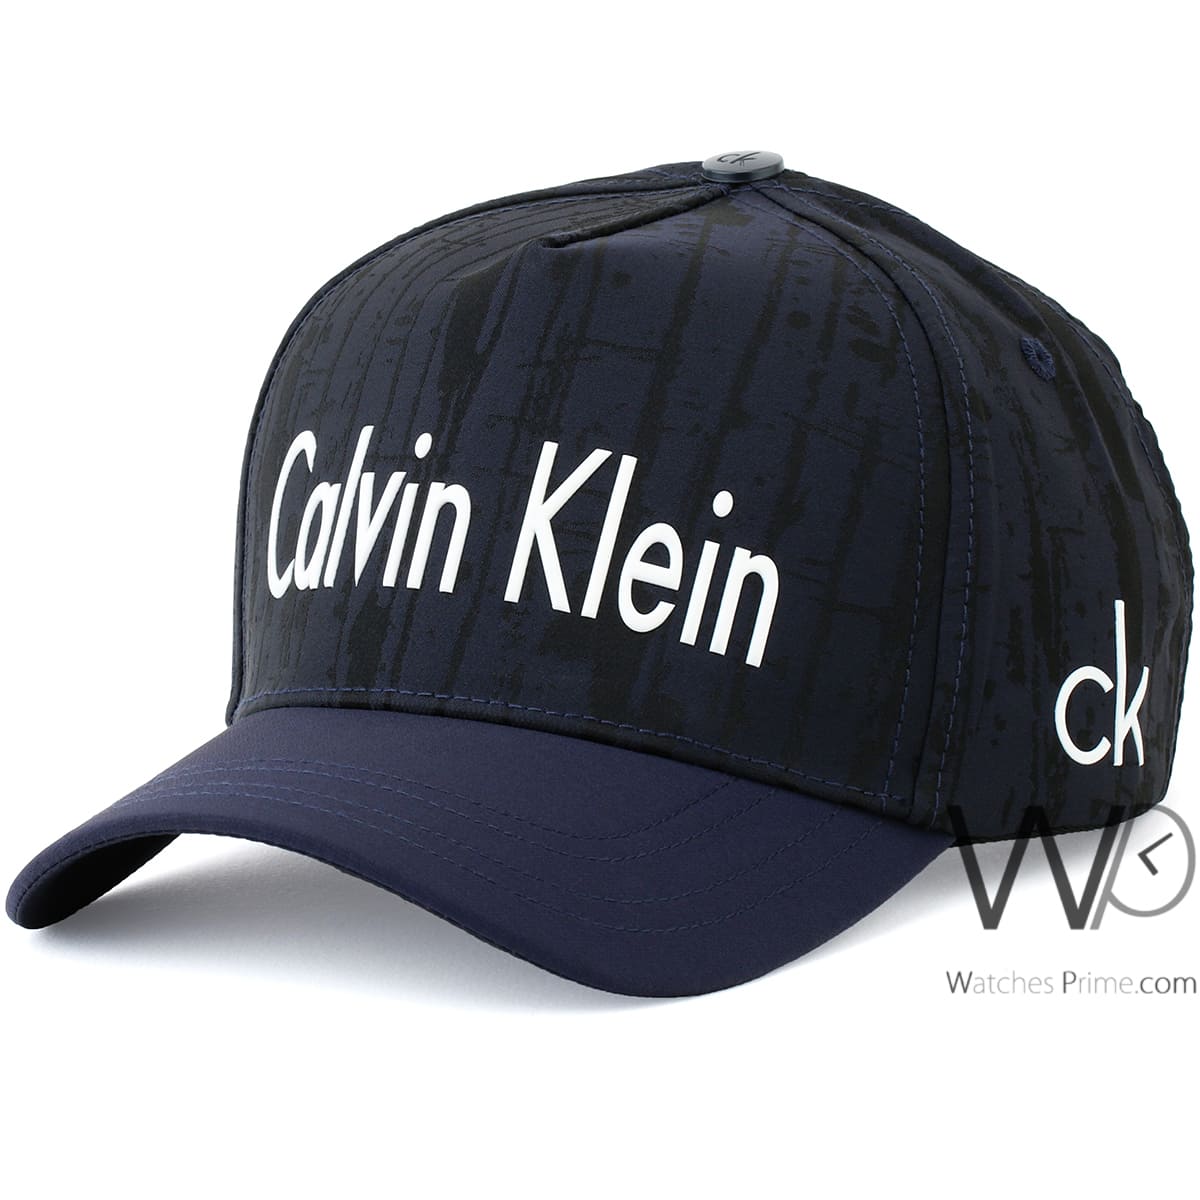 Calvin Klein CK navy blue baseball cap men | Watches Prime